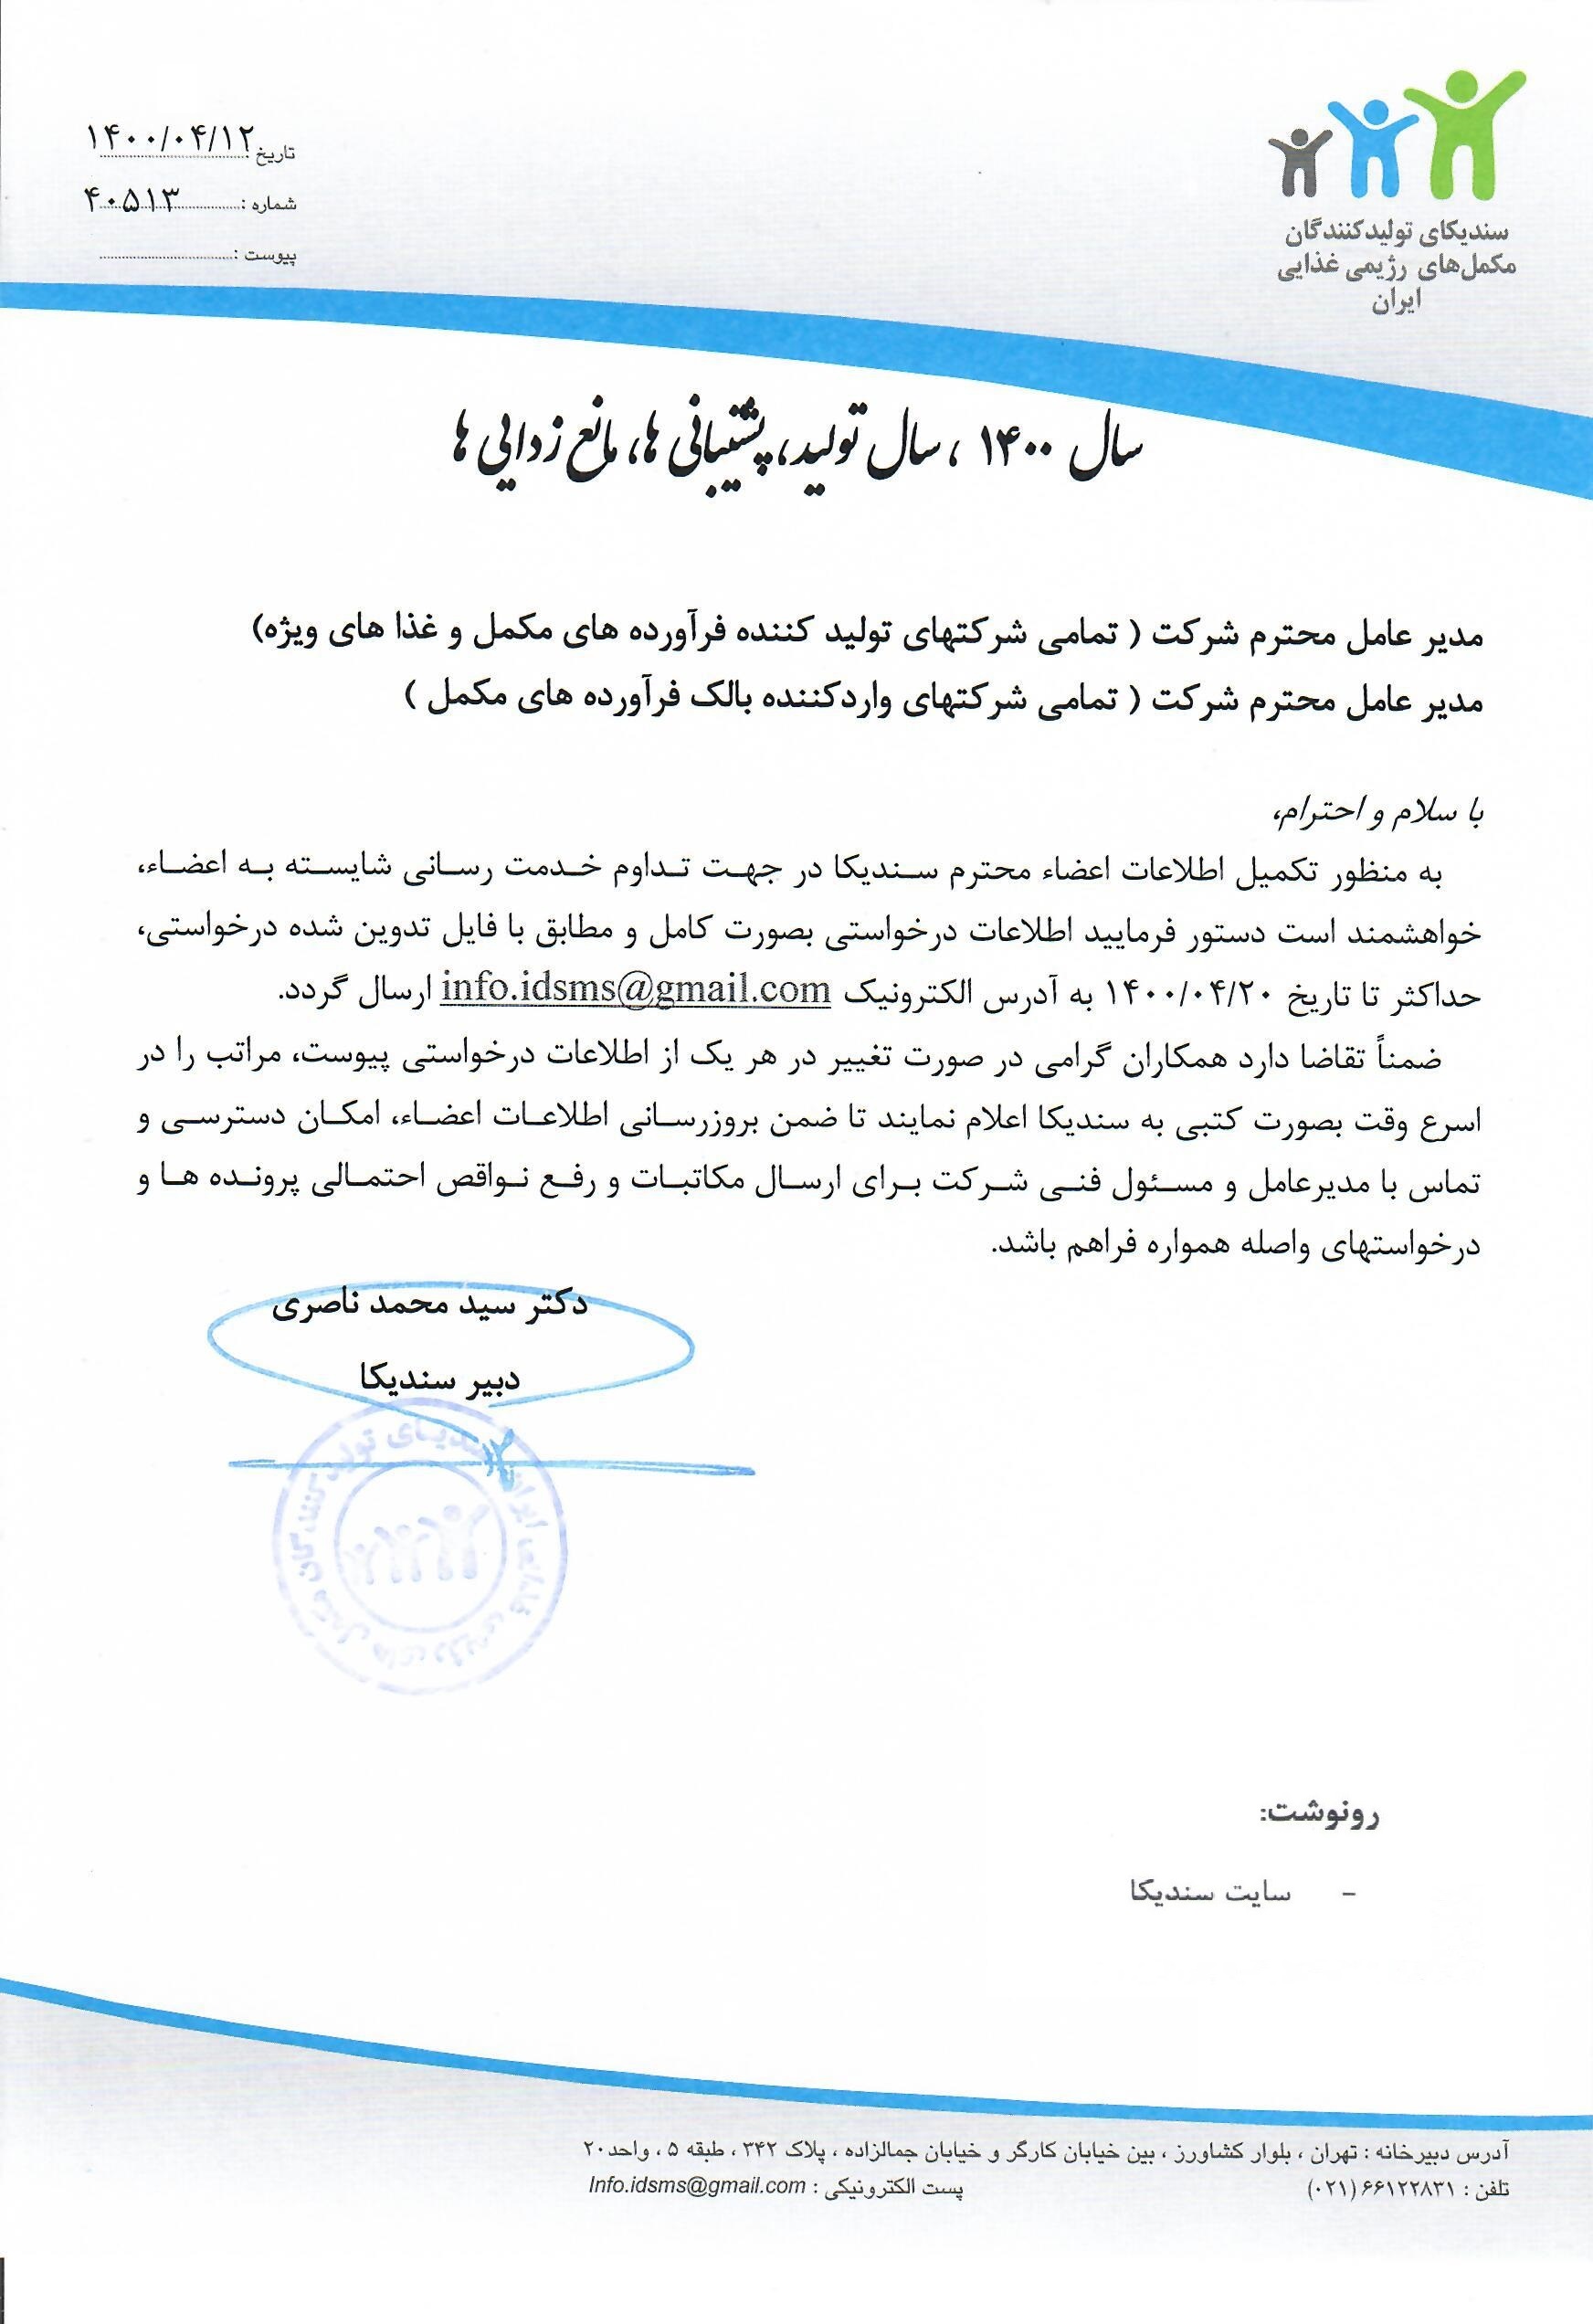 نامه در خصوص بروز رسانی اطلاعات اعضای سندیکا